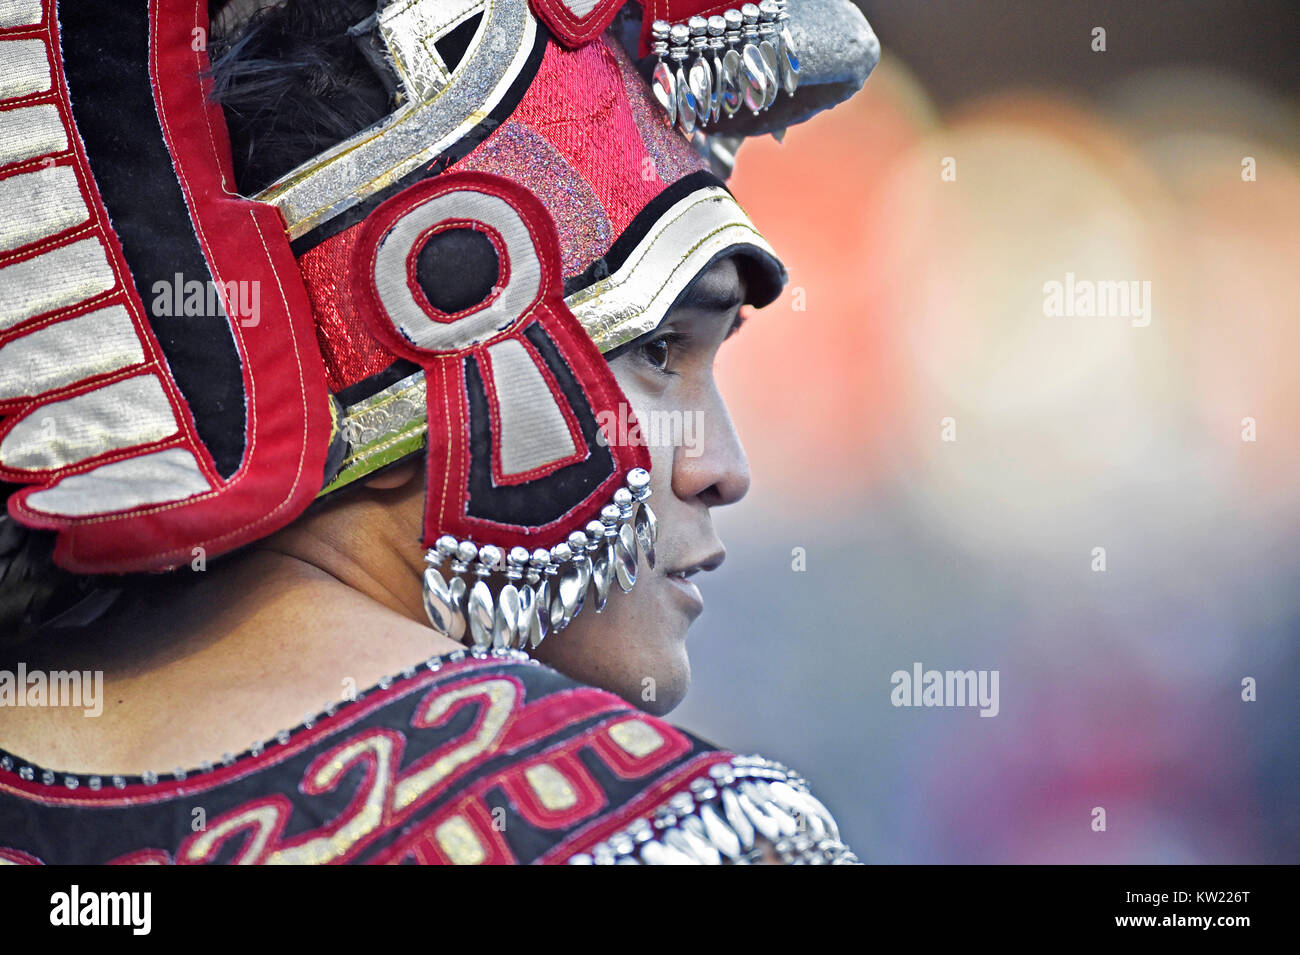 23 décembre 2017 - San Diego State guerrier aztèque mascot montres de la ligne de côté au cours du deuxième trimestre d'un collège NCAA Football jeu contre l'armée dans les Forces armées de Lockheed Martin à Bol Stade Amon G. Carter à Fort Worth, Texas. 42-35 L'armée a gagné. McAfee Austin/CSM Banque D'Images